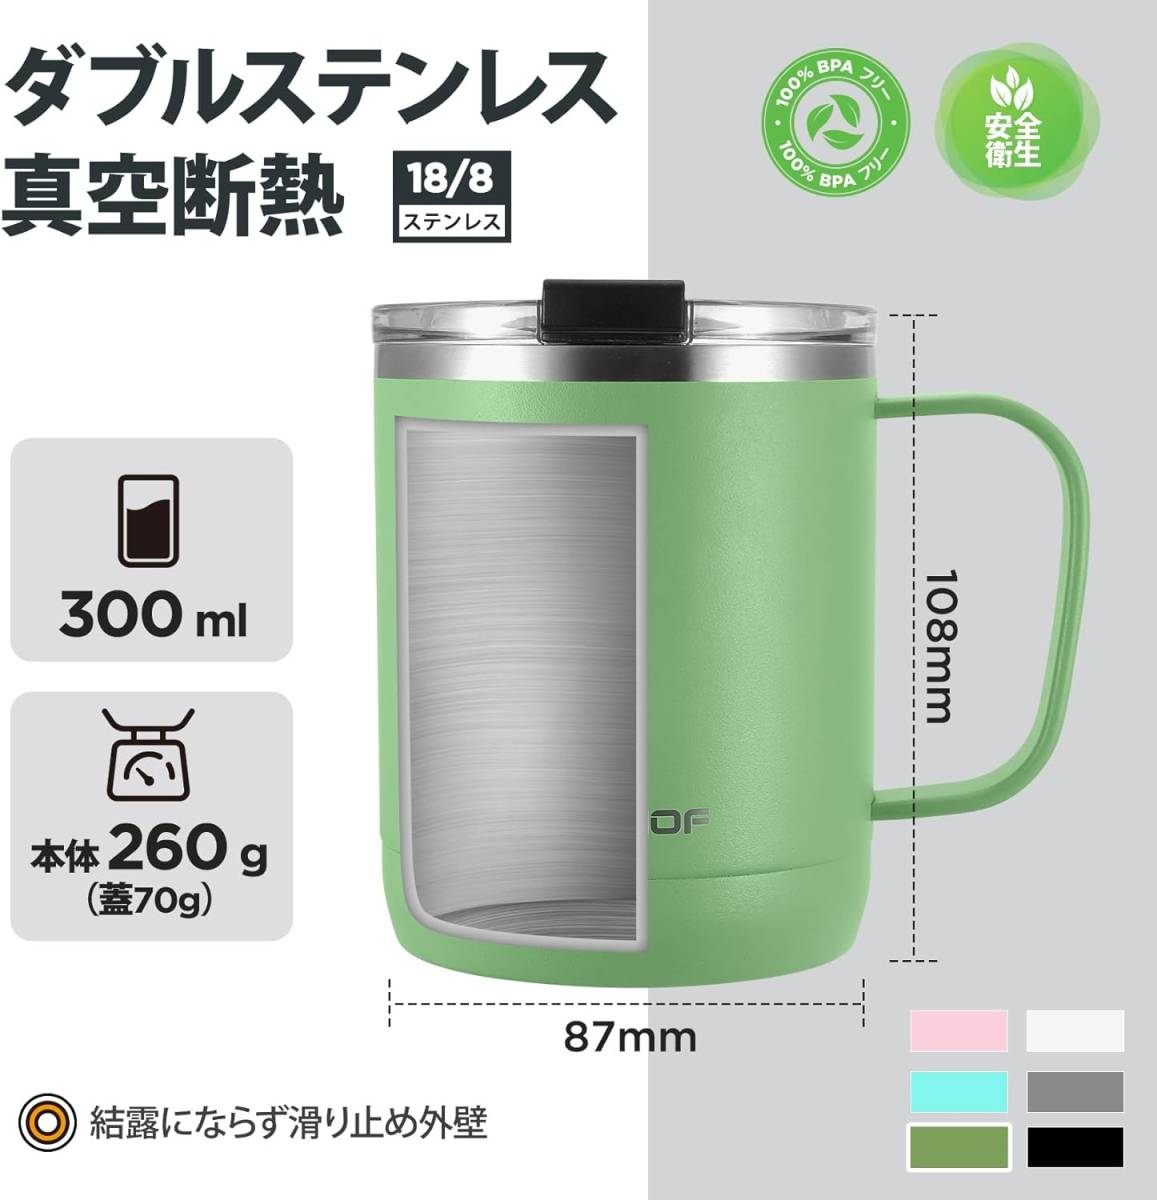 オリーブグリーン HAUSHOF ステンレスマグカップ 真空断熱コーヒーカップ ふた付き 300ml 保温・保冷カップ 二重構造 _画像2